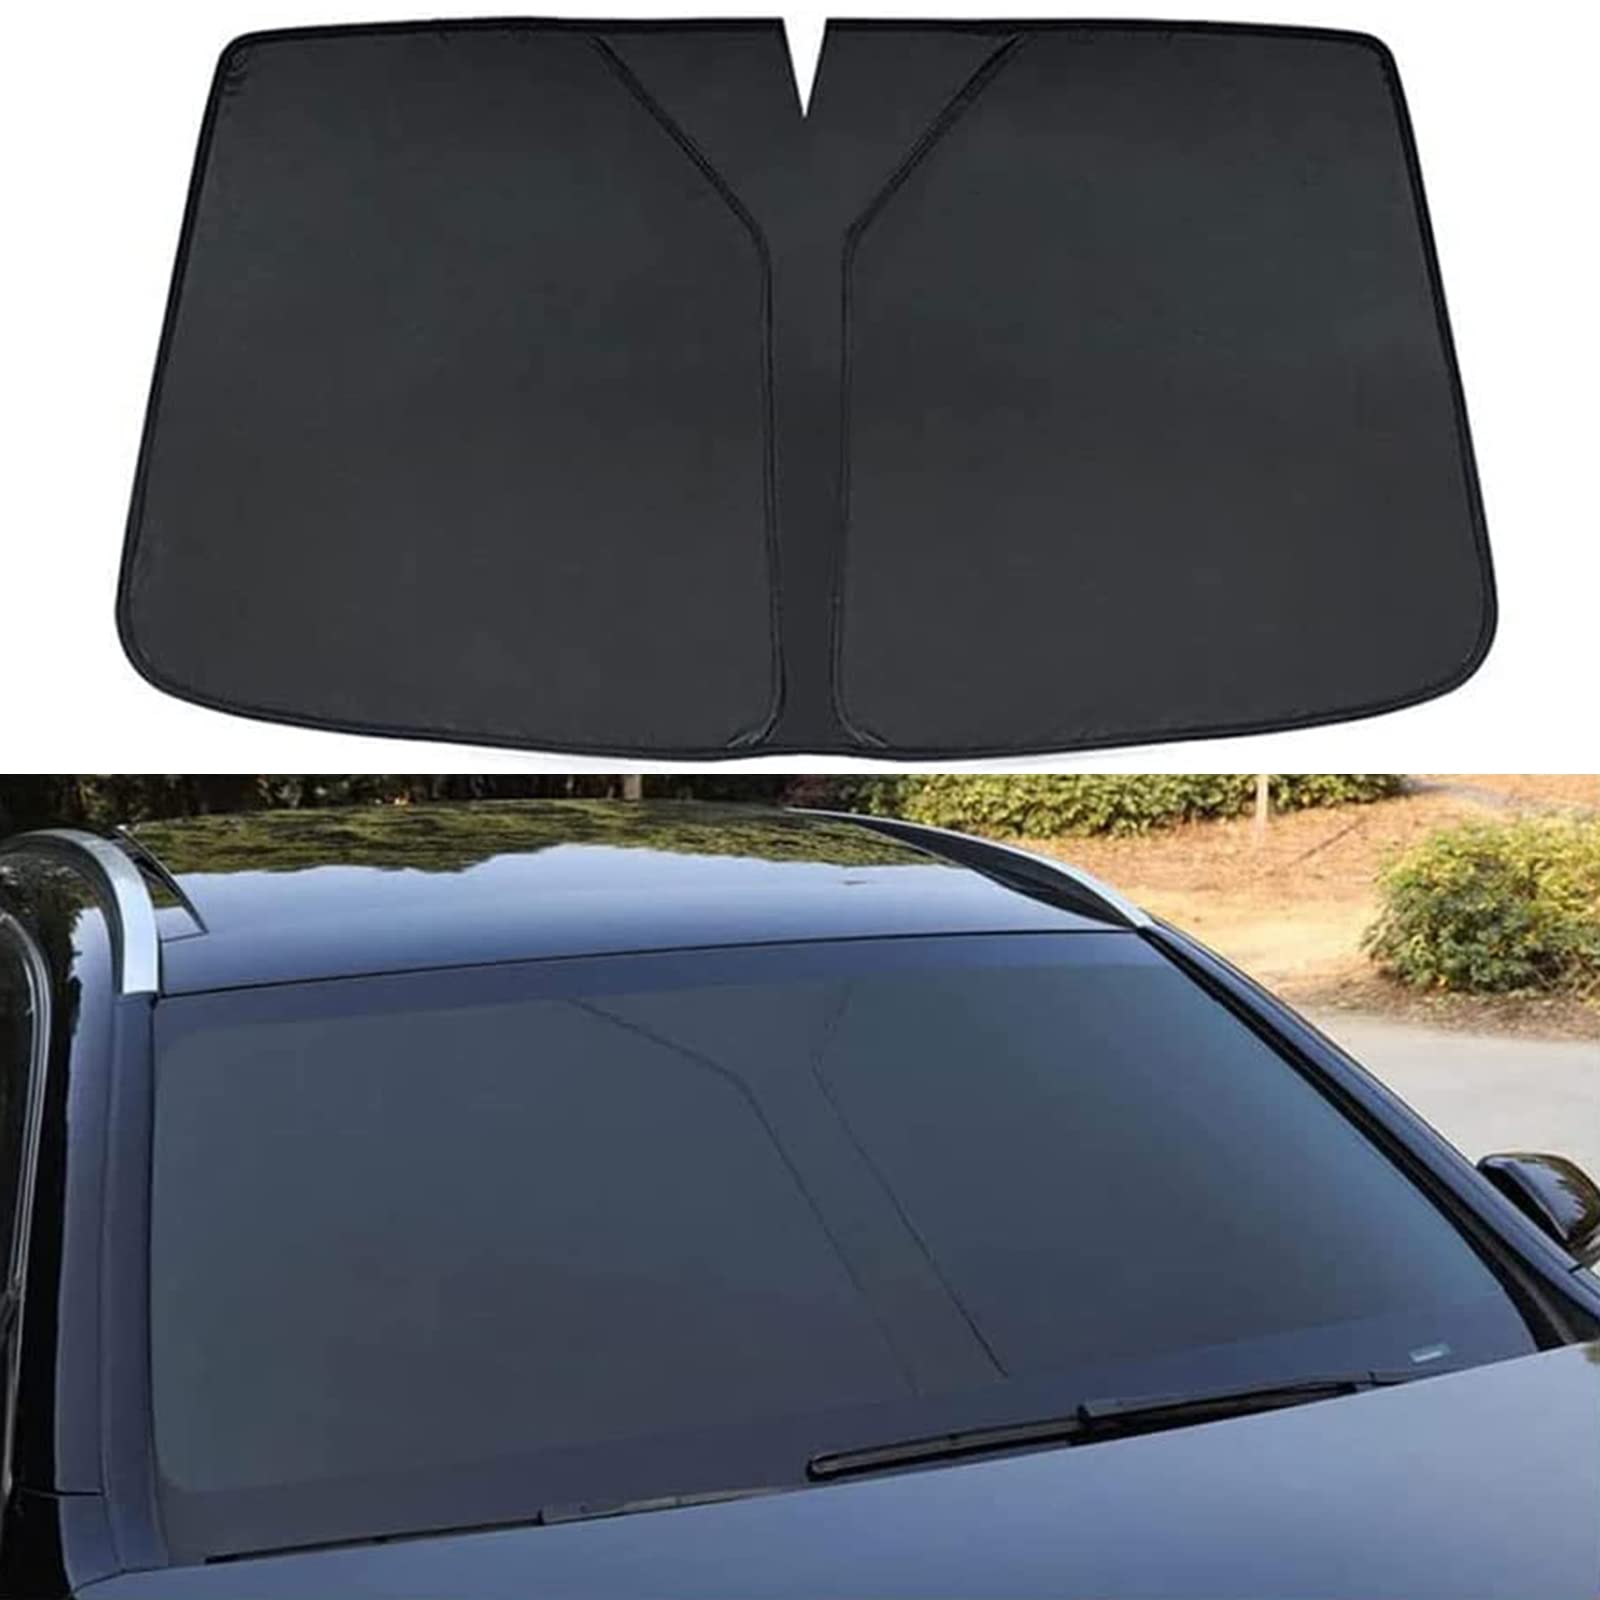 ELEDVB Auto Frontscheiben Abdeckung für Mazda 6 2019 2020 2021, Auto Faltbar Windschutzscheiben Sonnenblende Scheibenabdeckung, Auto Plane, Sonnenschutz Wärmeisolierter,Black von ELEDVB